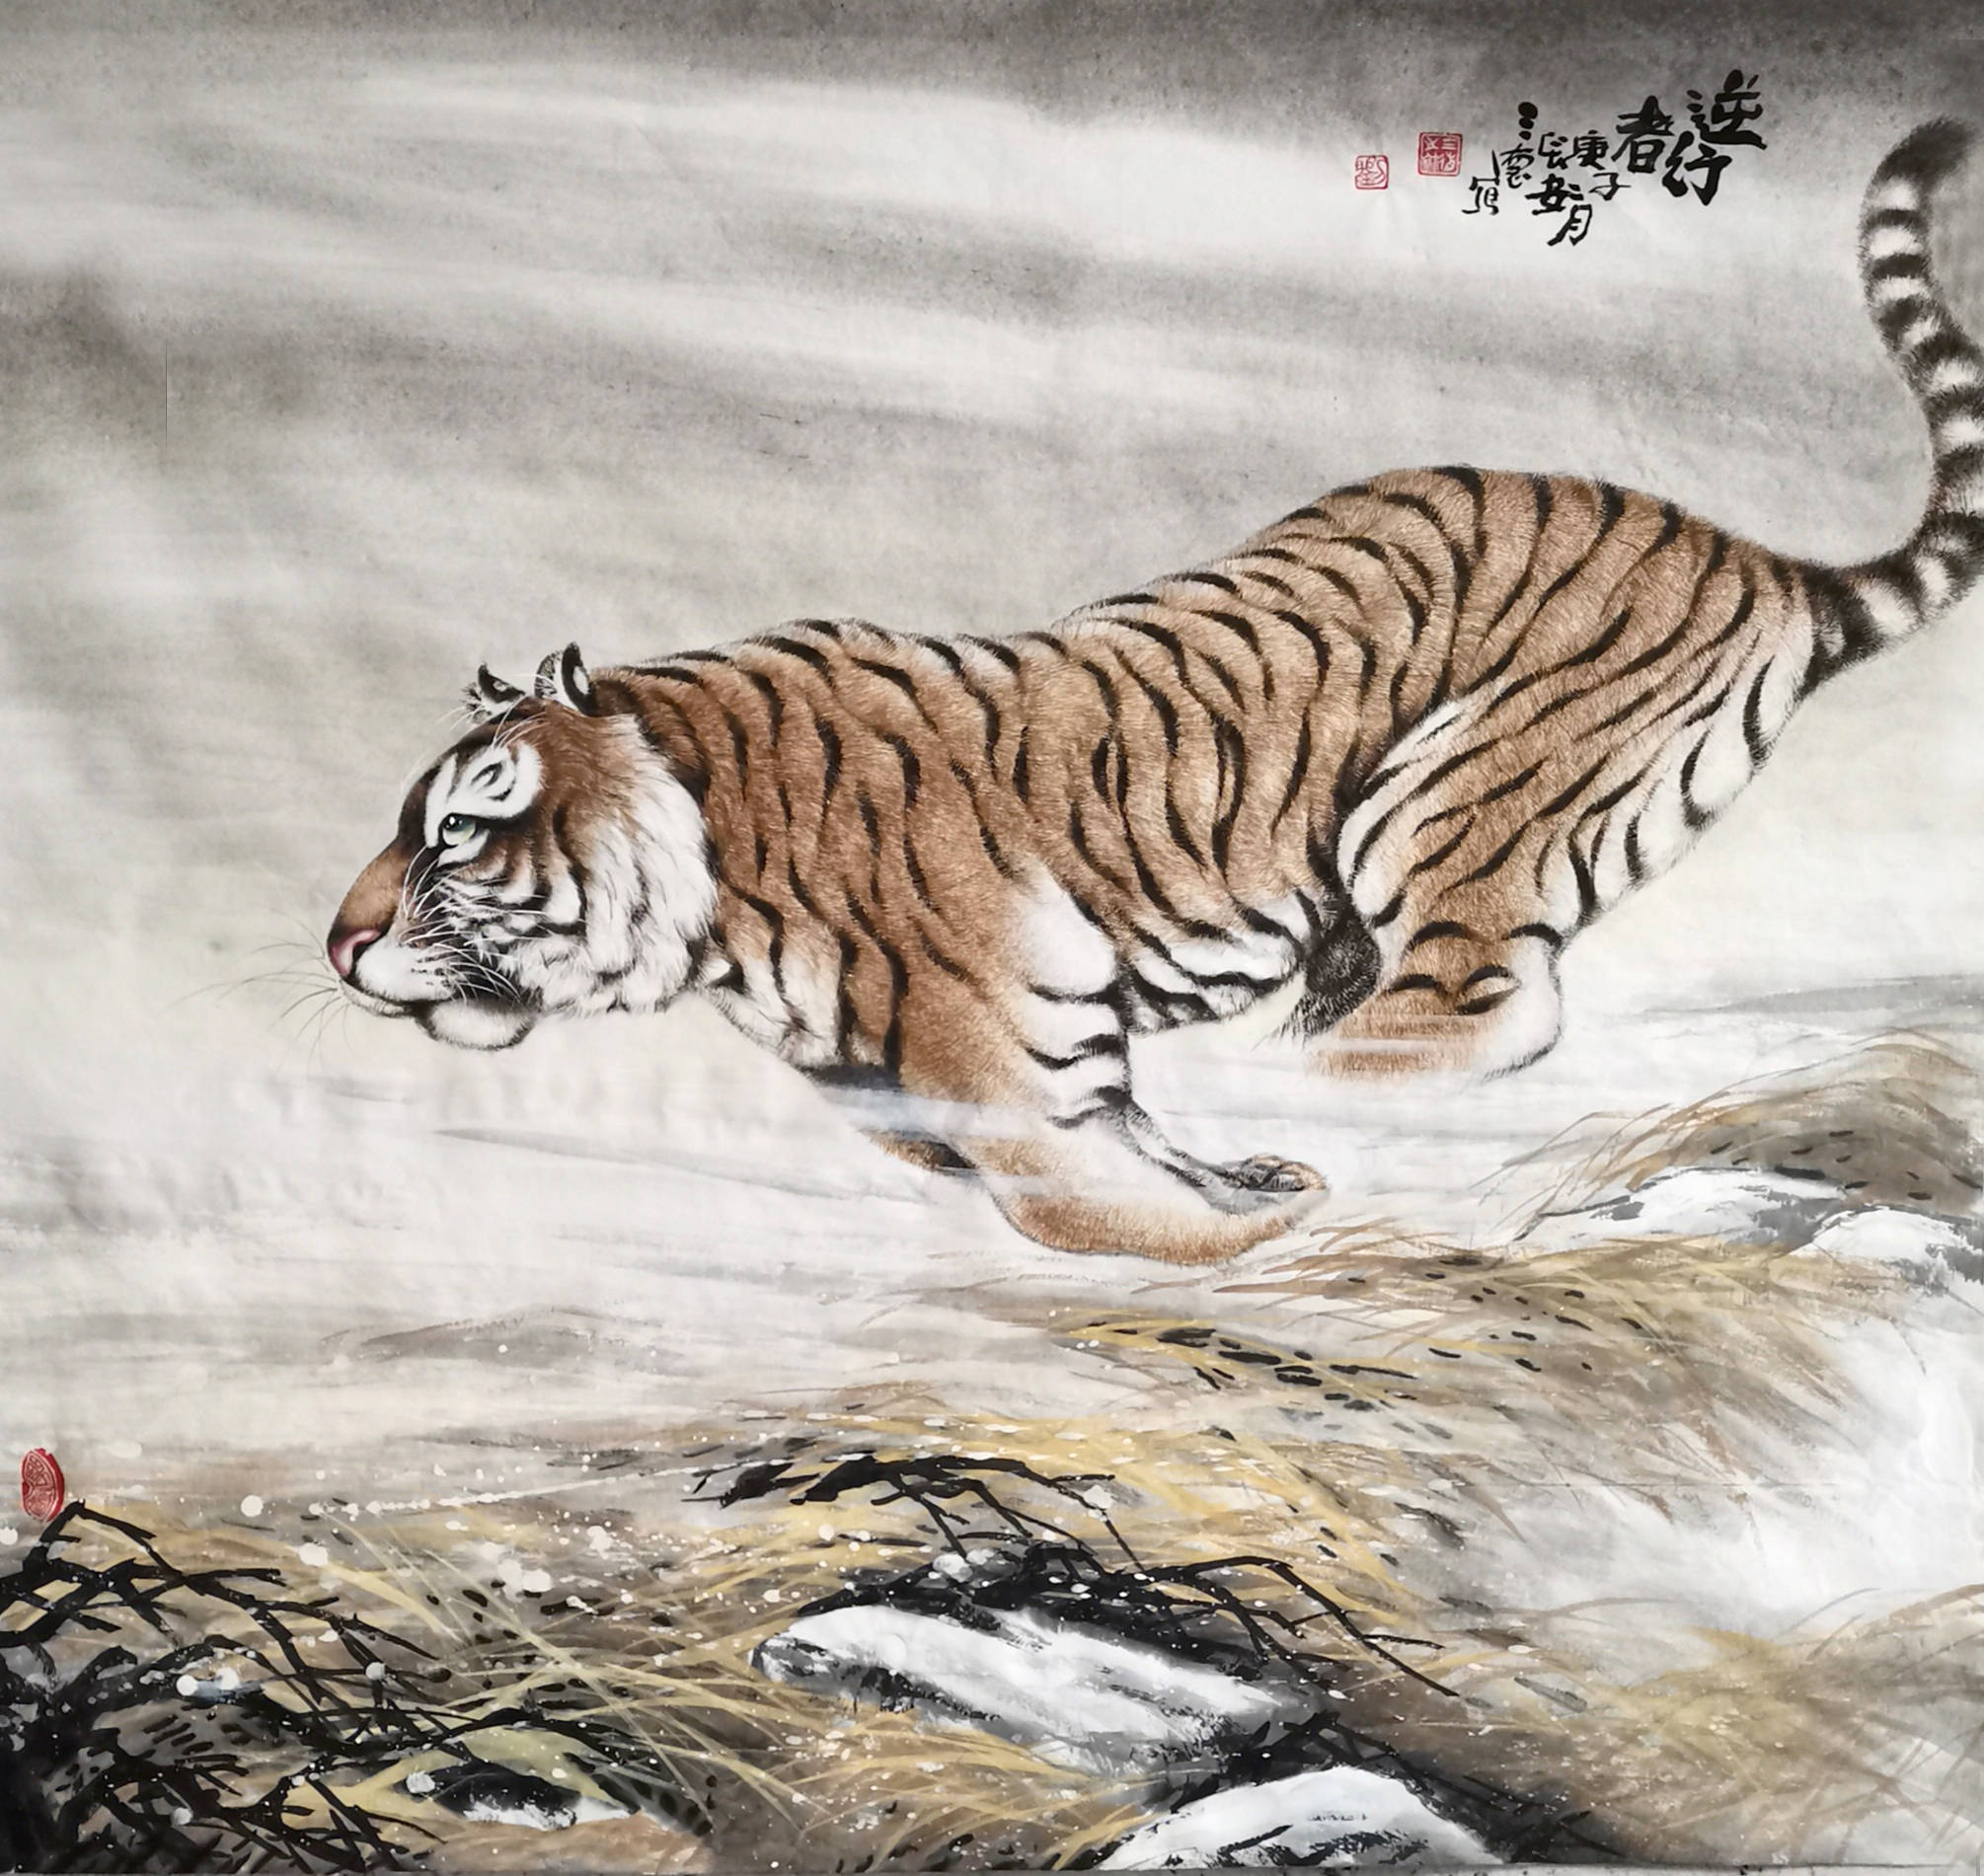 刘三德以工笔手法所塑造的老虎十分精细,精益求精